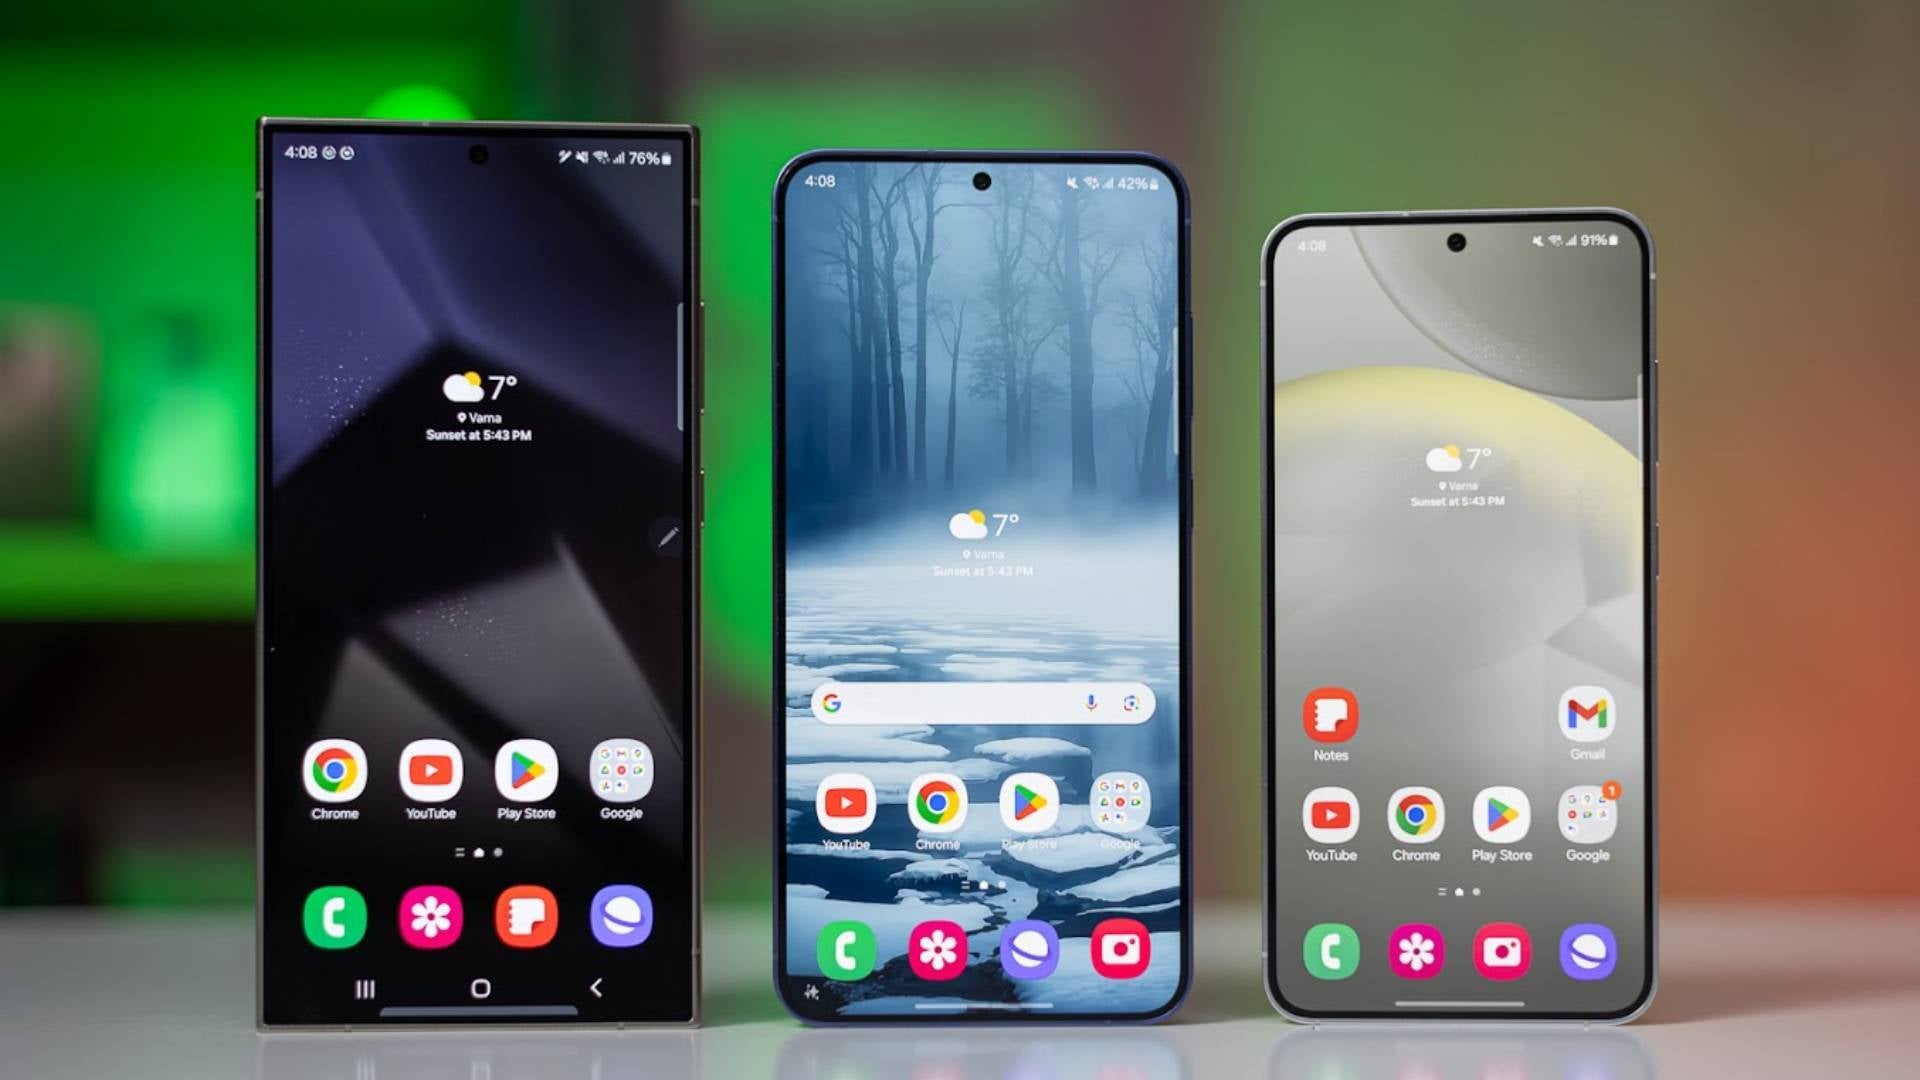 Resim kredisi - PhoneArena - Samsung'un One UI 7'yi Pixel kullanıcılarının taraf değiştirmesini sağlayacak kadar iyi hale getirmesinin üç yolu